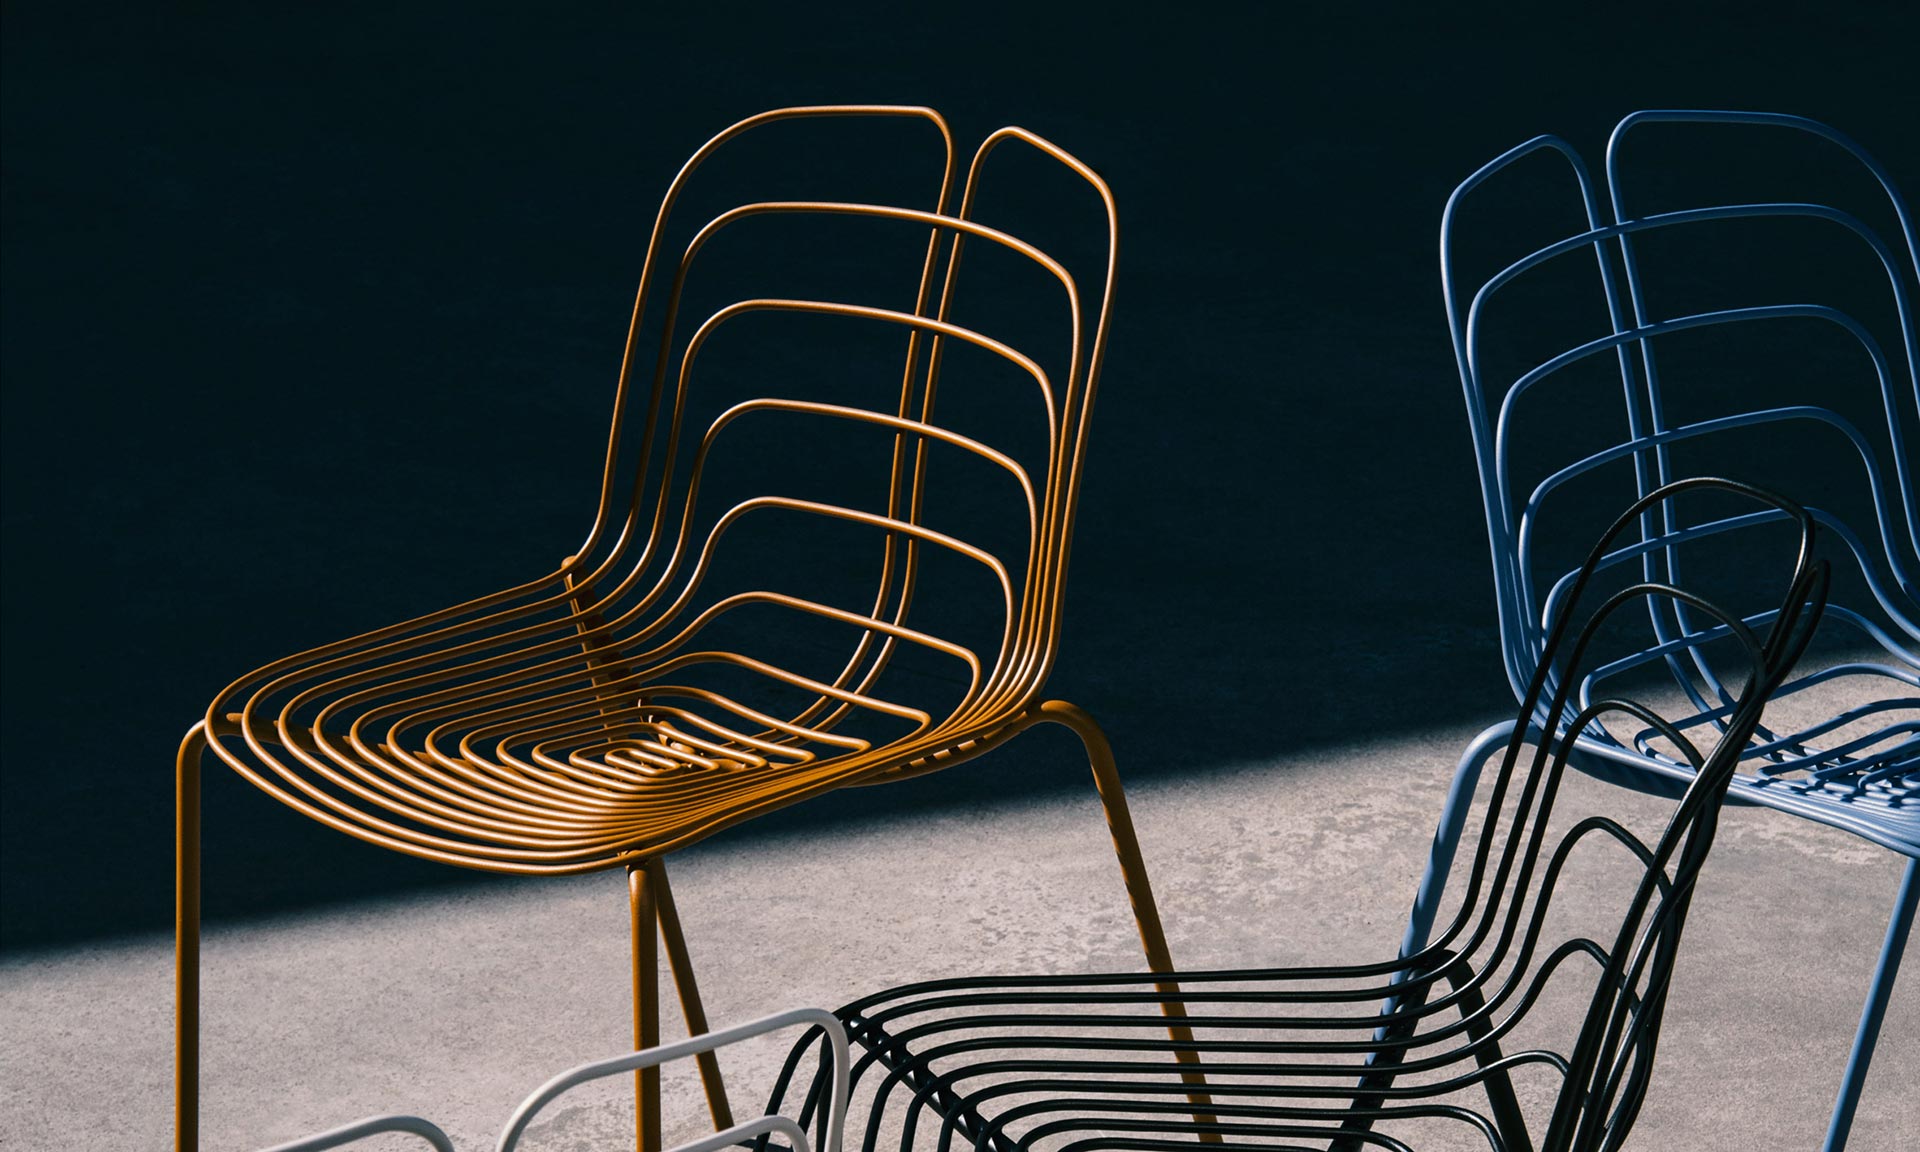 Michael Young navrhl židli Wired Chair připomínající žilky listu